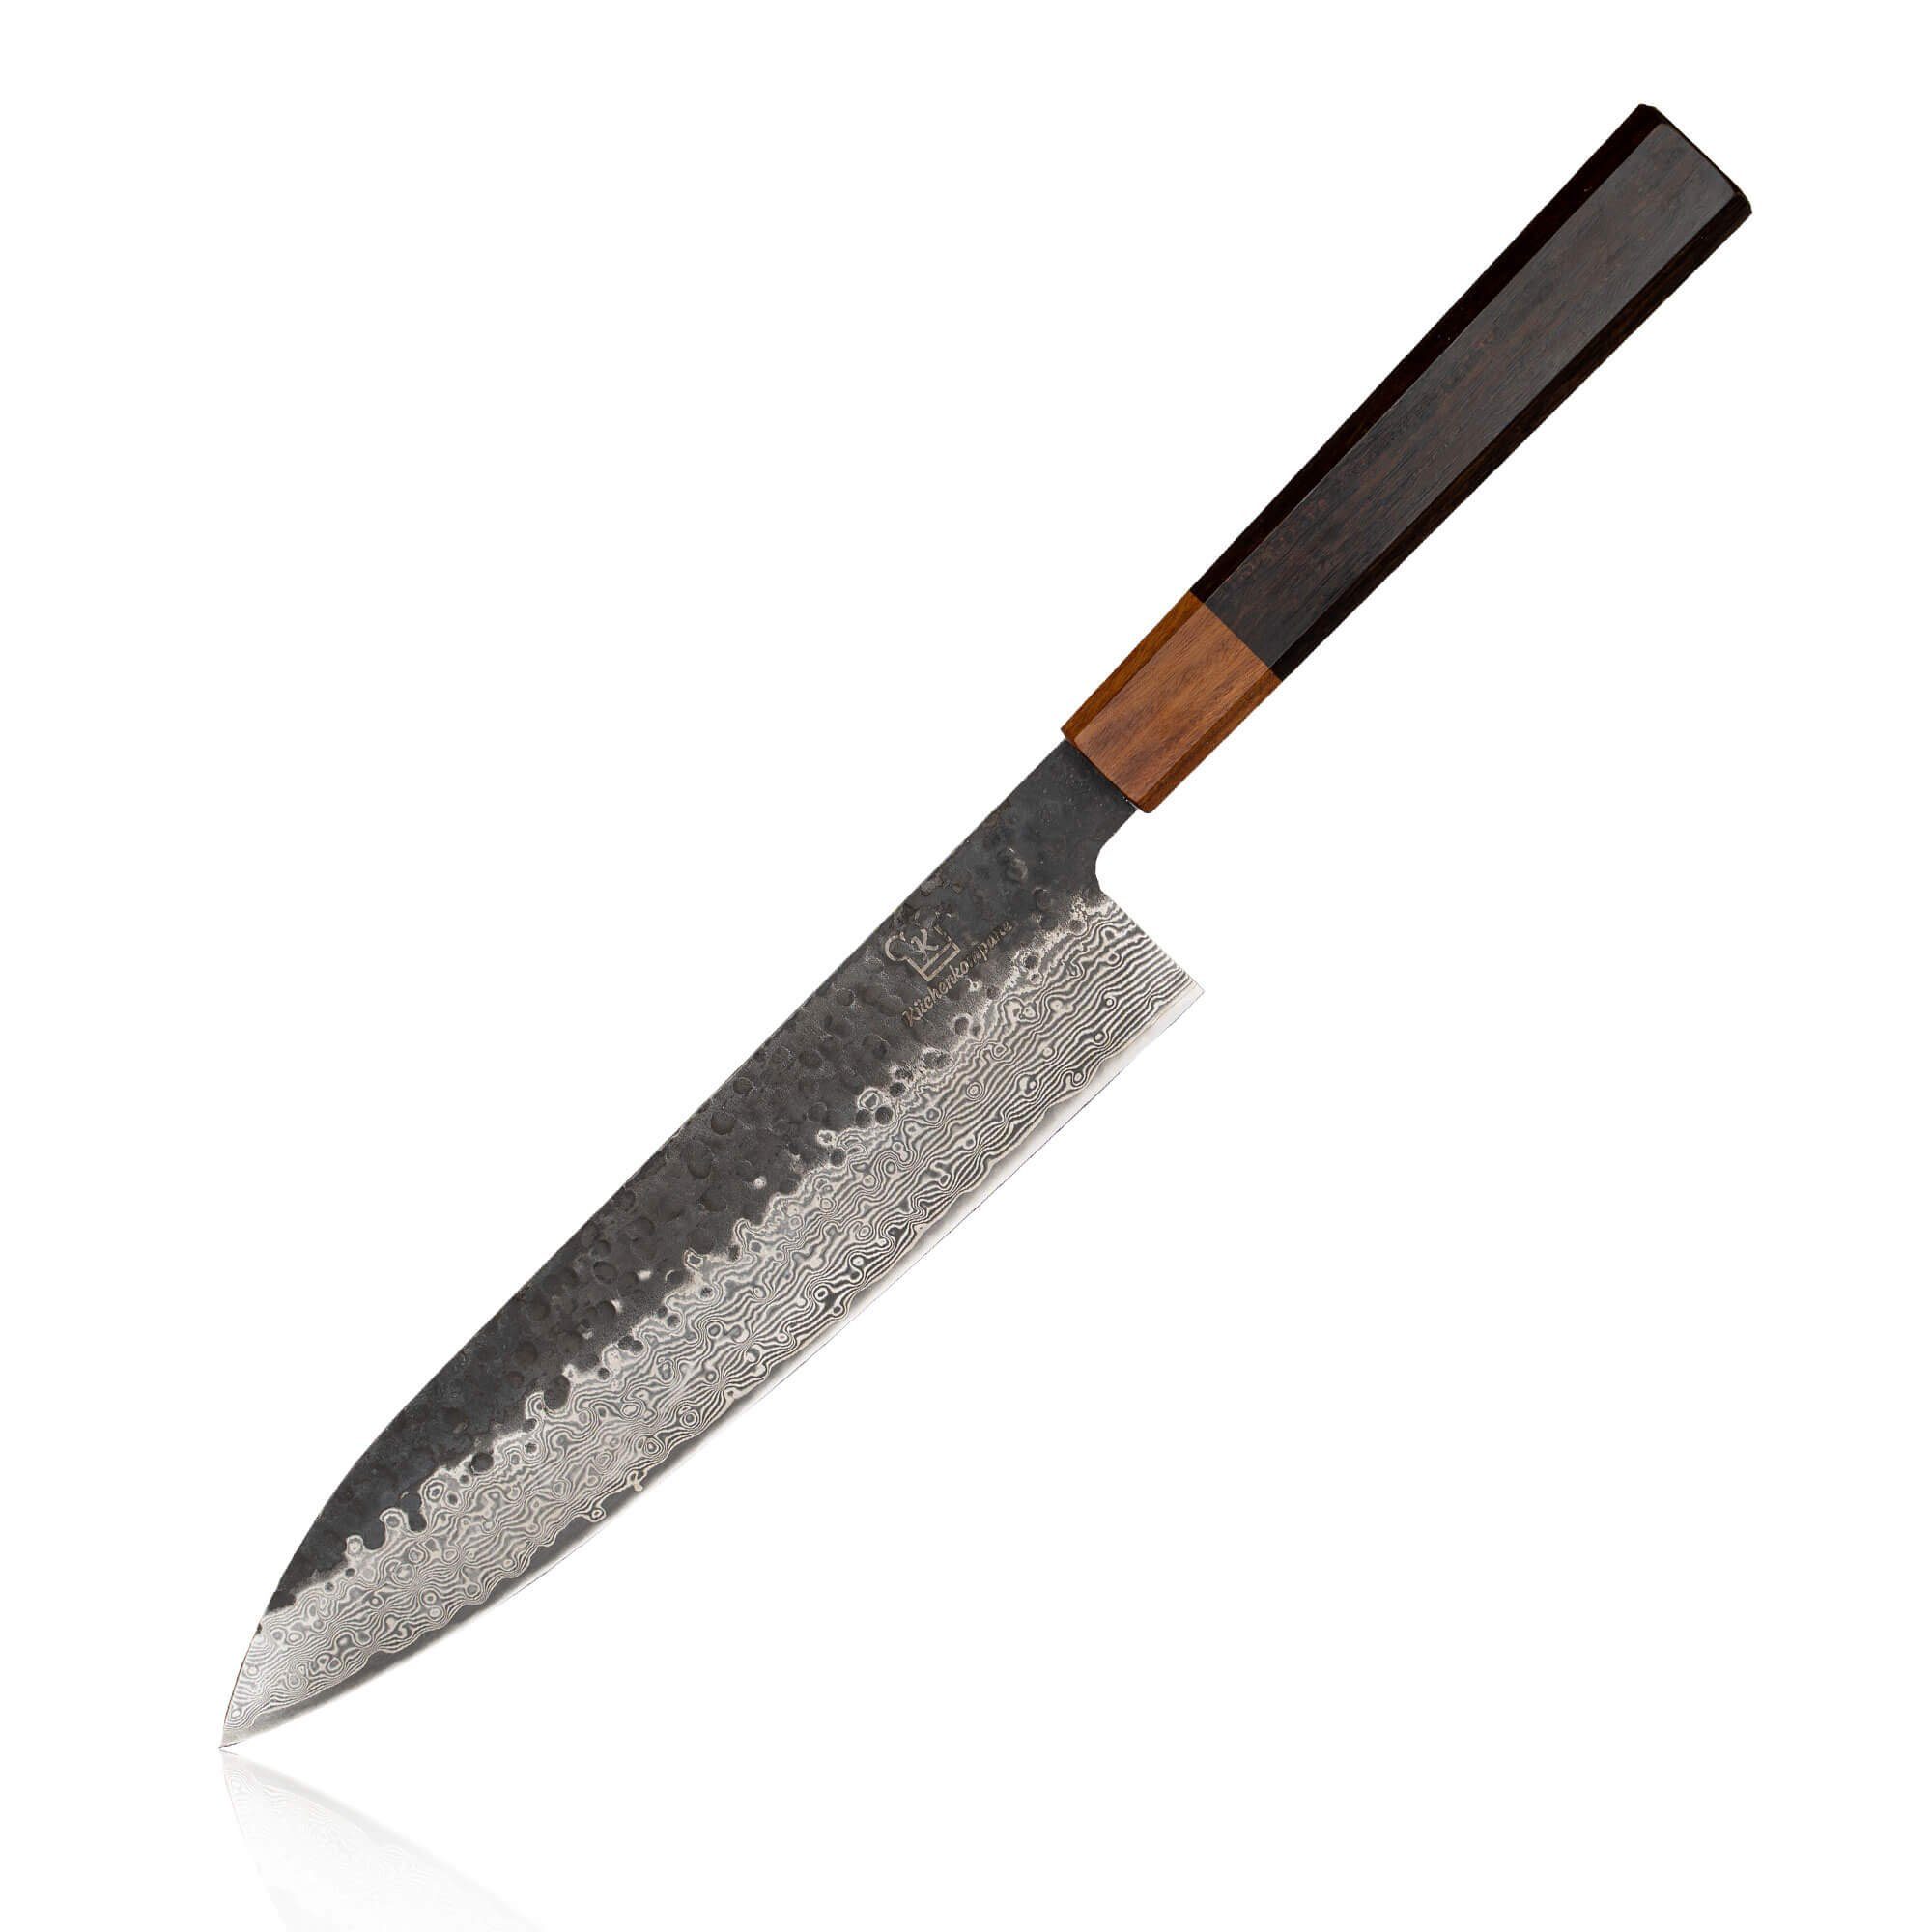 Küchenkompane Fleischmesser Chefmesser aus Stahlkern und japanischem 67 Lagen Stahl Damaskus VG10